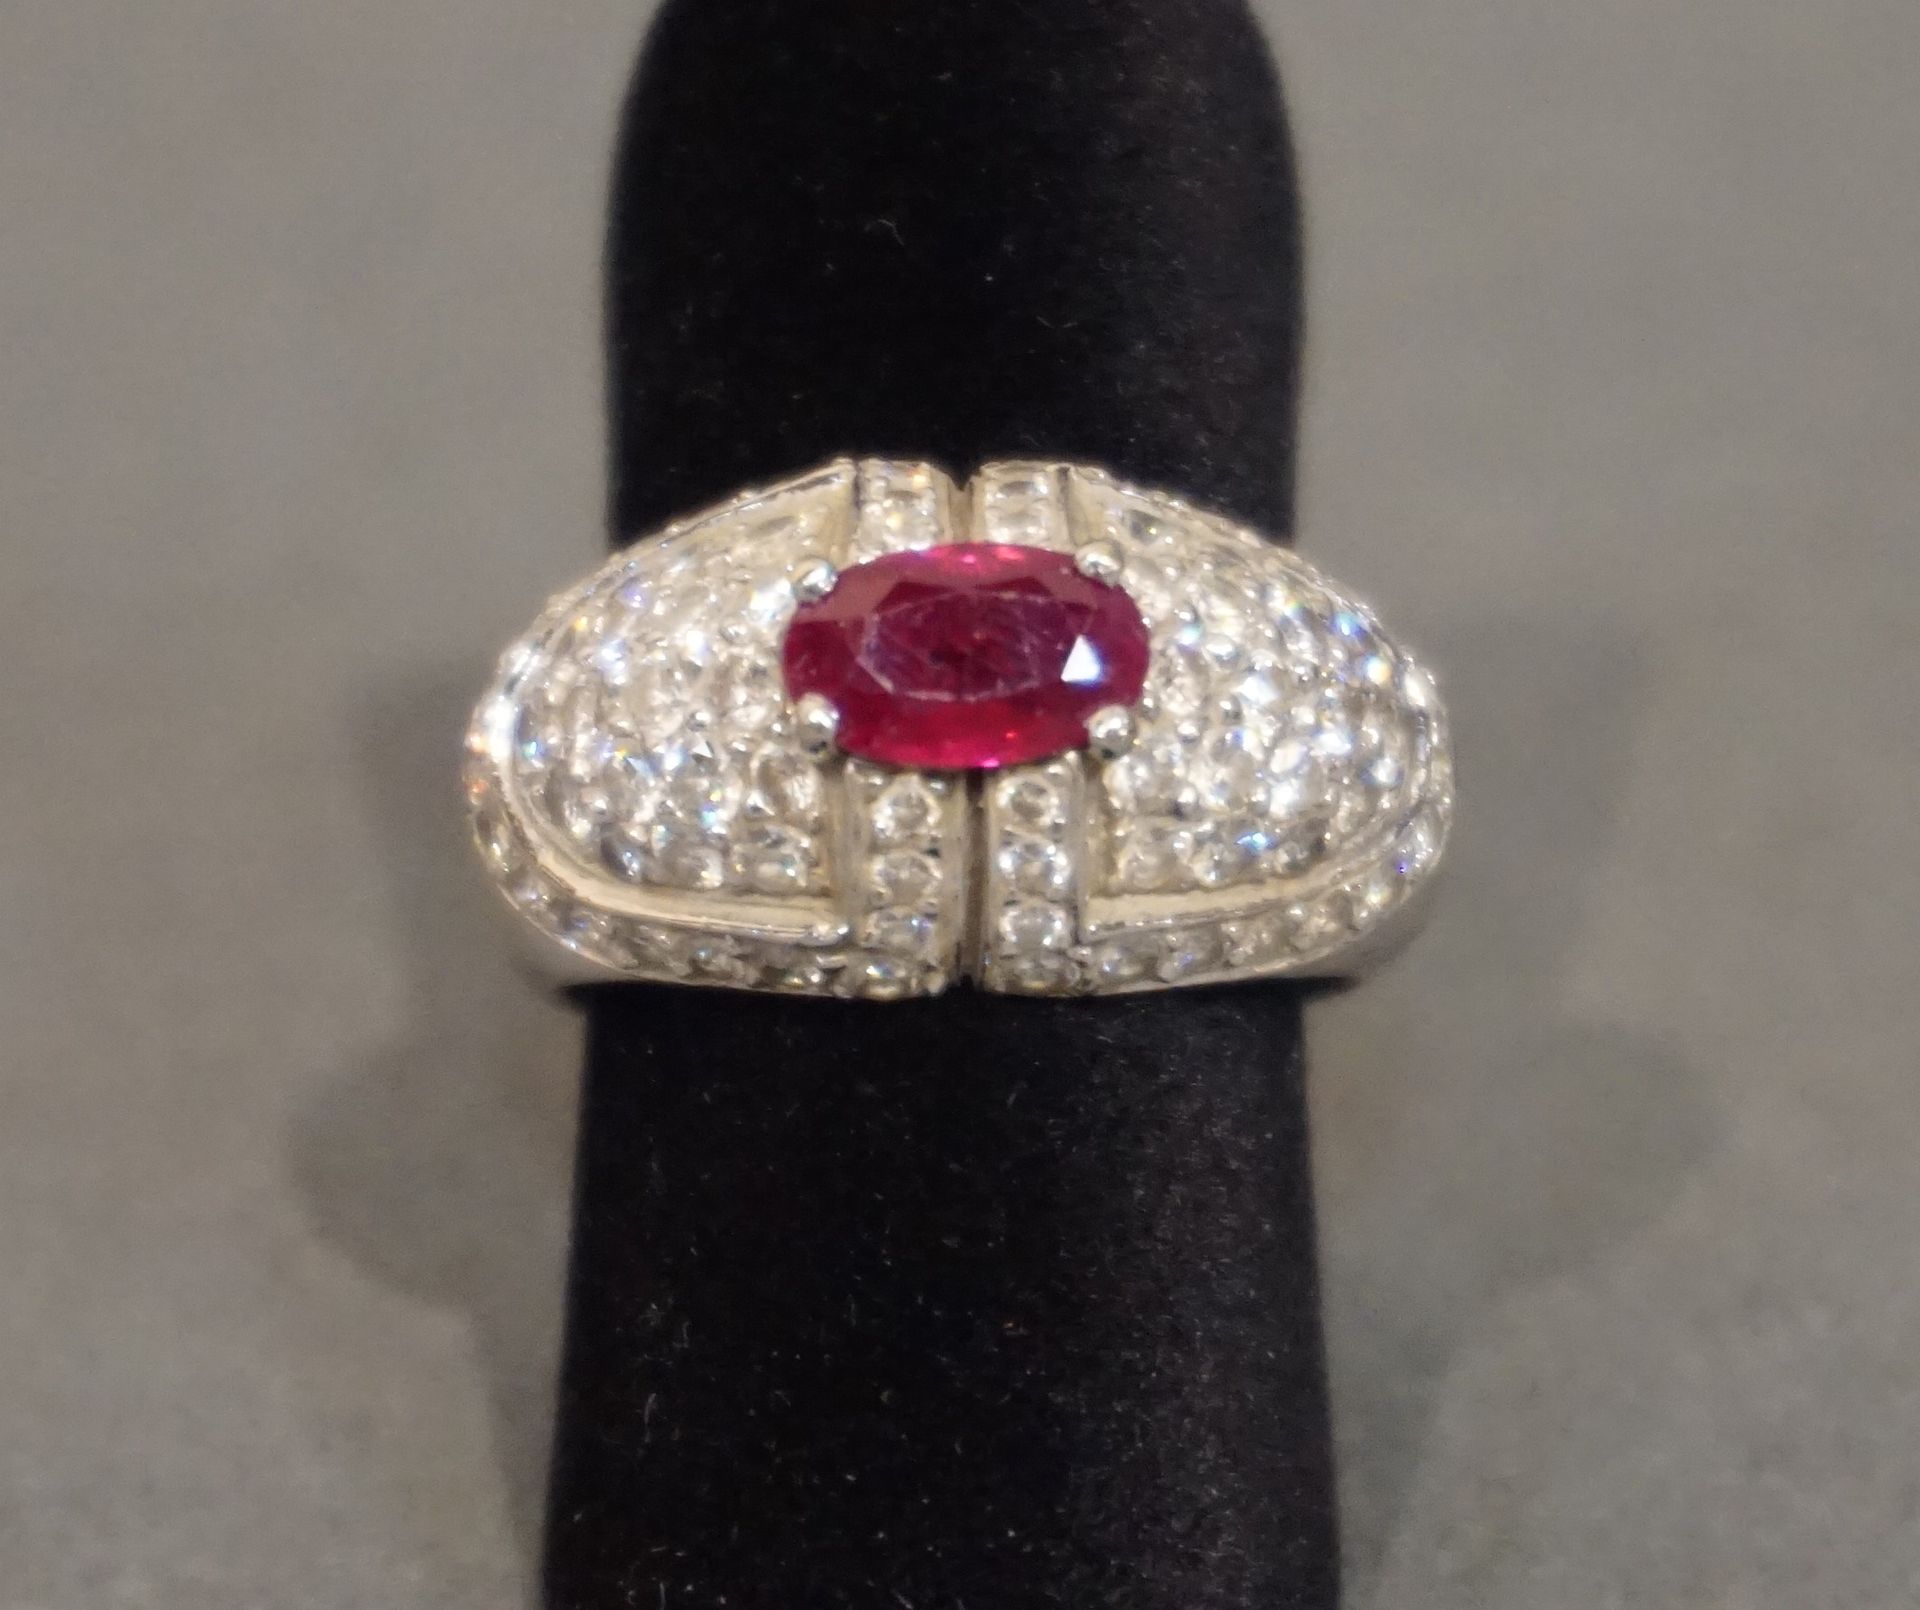 Bague 镶嵌椭圆形红宝石和密镶钻石的白金戒指（8克）。手指大小 53